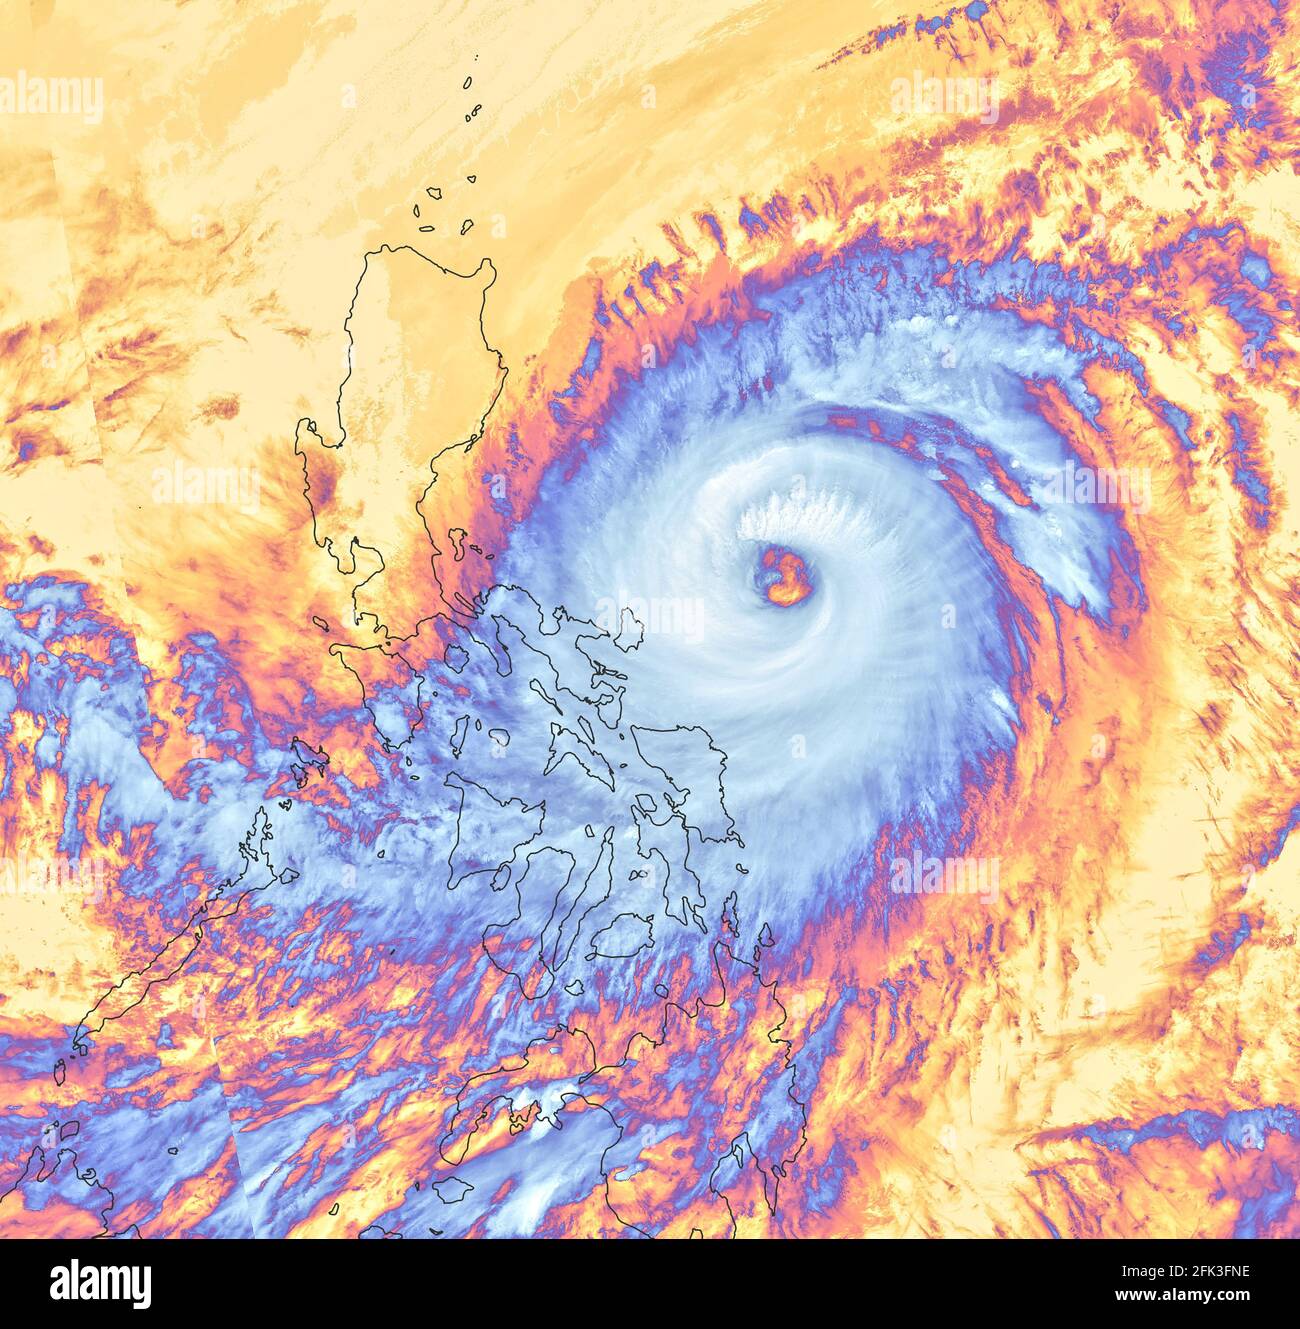 Supertyphon Surigae, bekannt als Bising auf den Philippinen, Pazifik, Südostasien, 19. April 2021 Hurrikan auf der nördlichen Hemisphäre Stockfoto